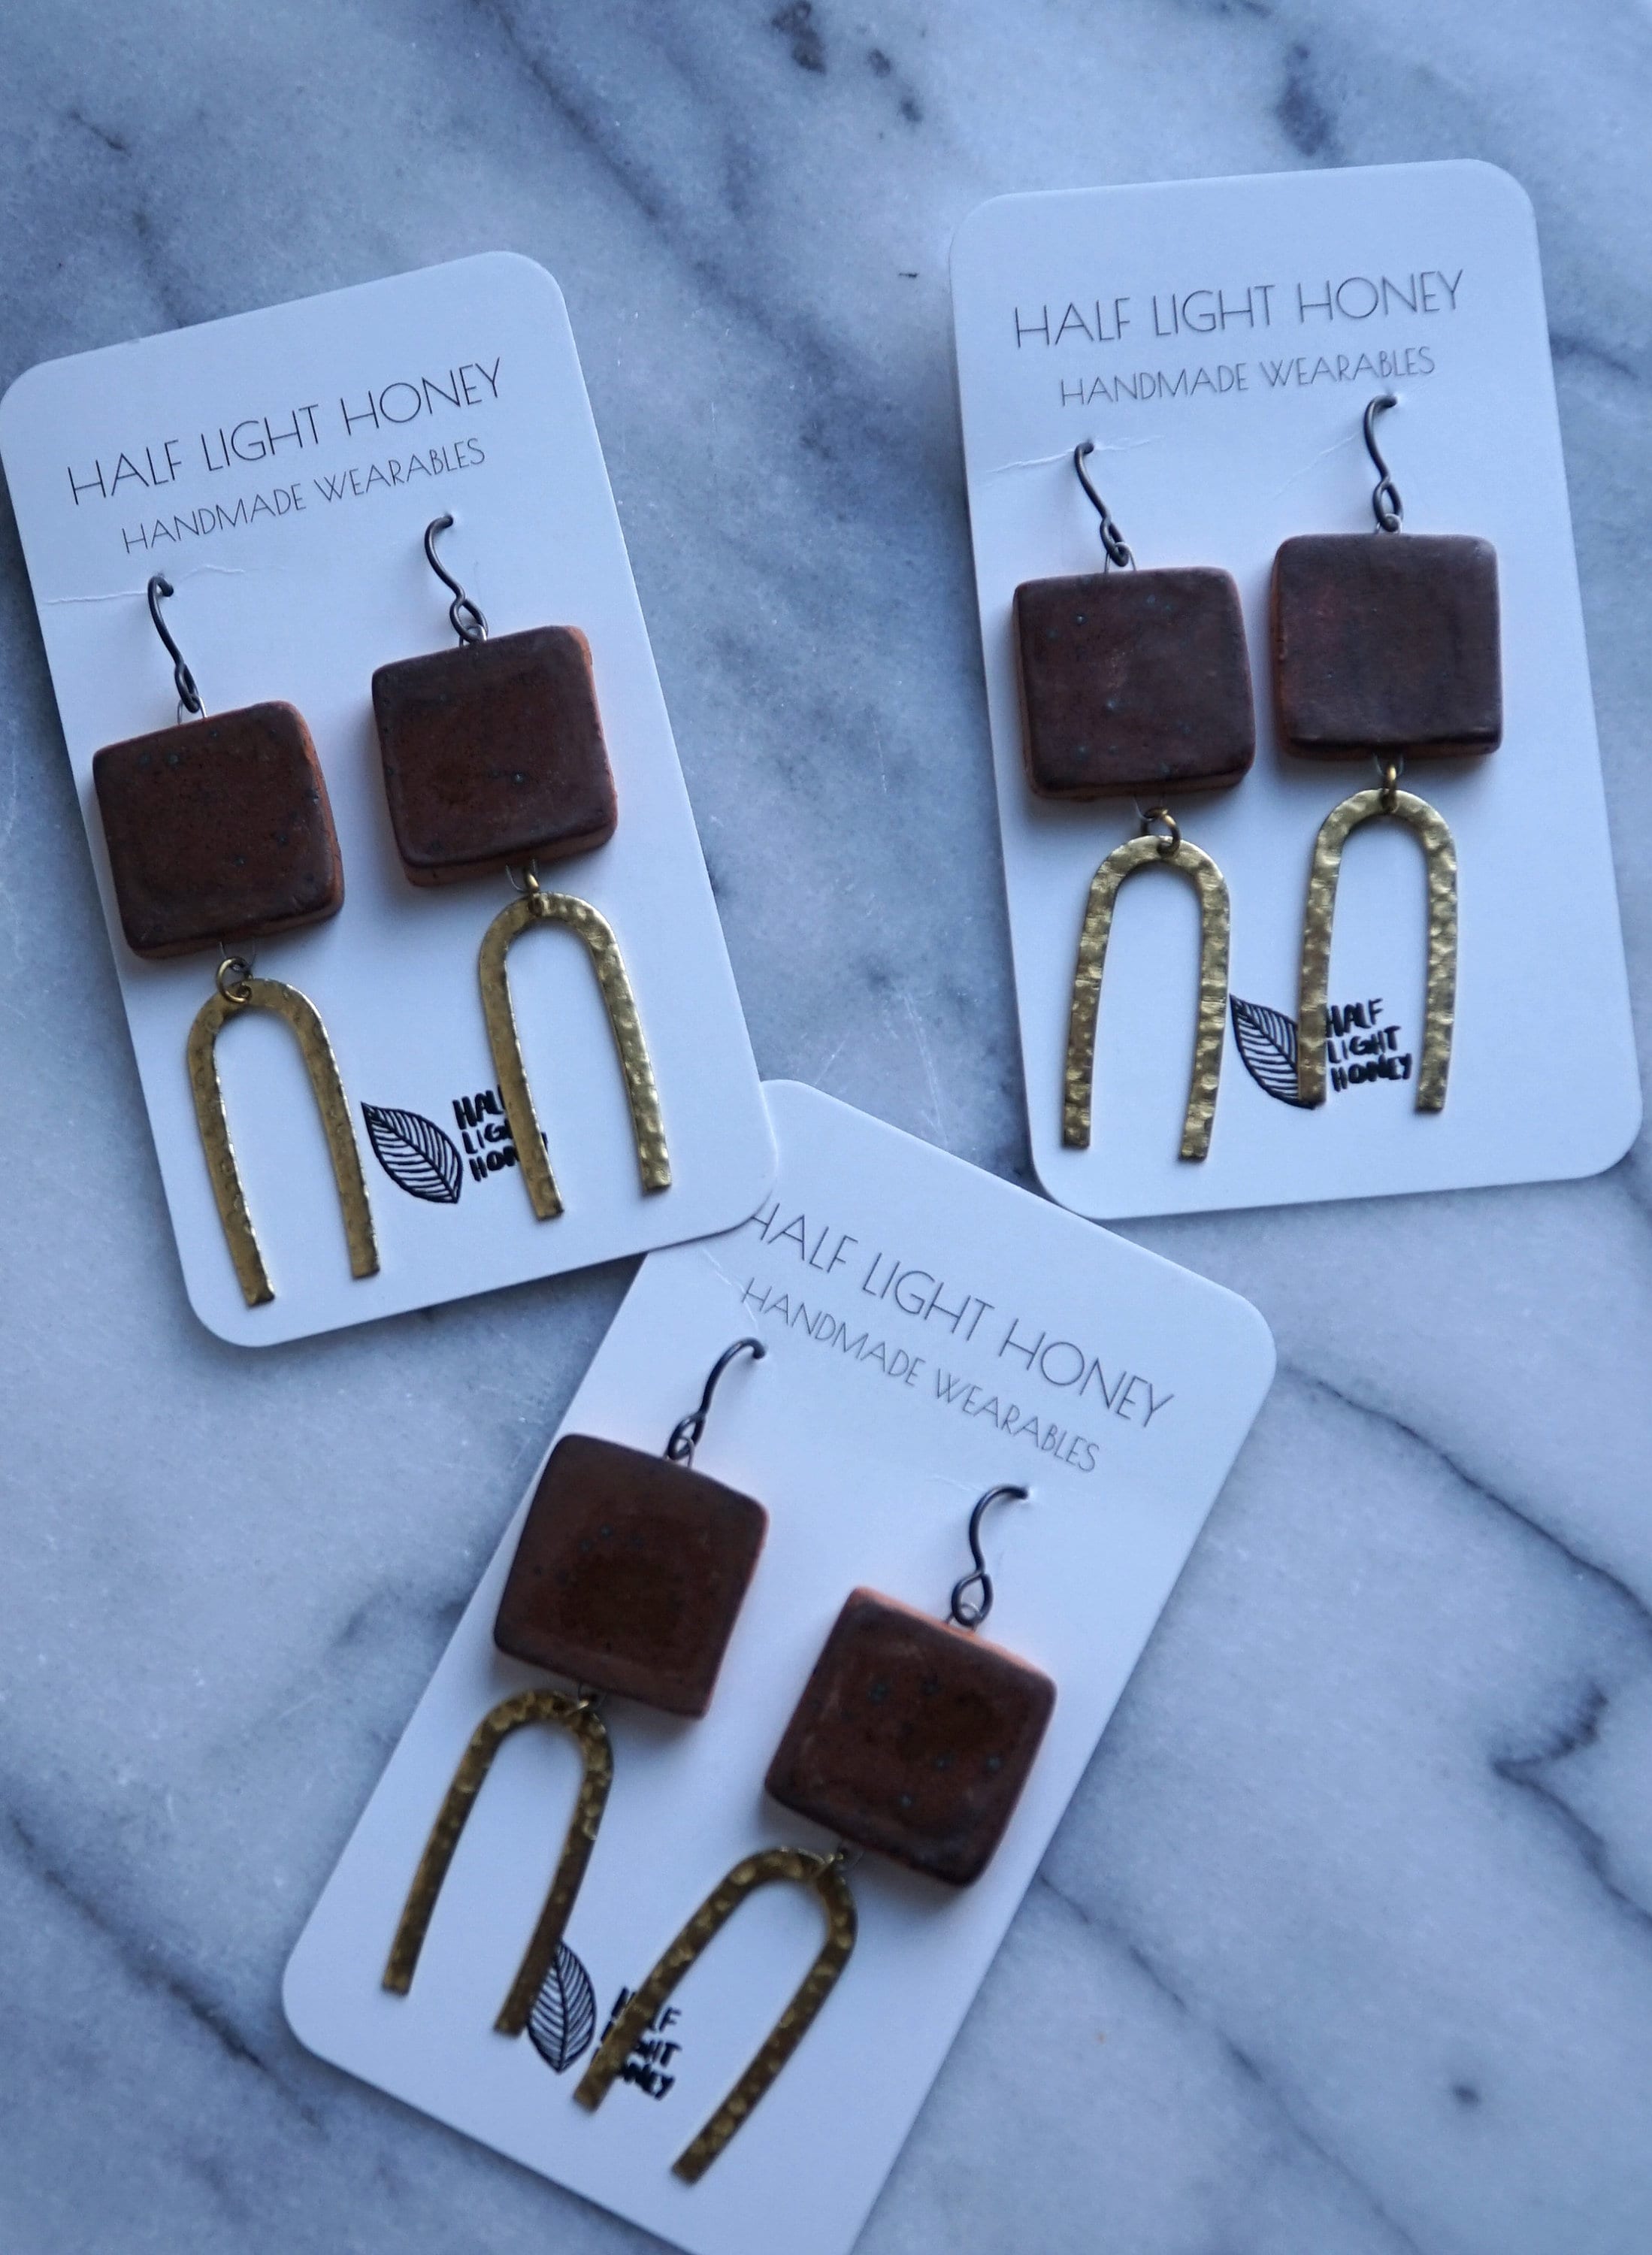 Mixed Media Earrings - Stoneware Earrings with Brass Charm Component - Hypoallergenic Earrings - Dangle Earrings - Art Jewelry